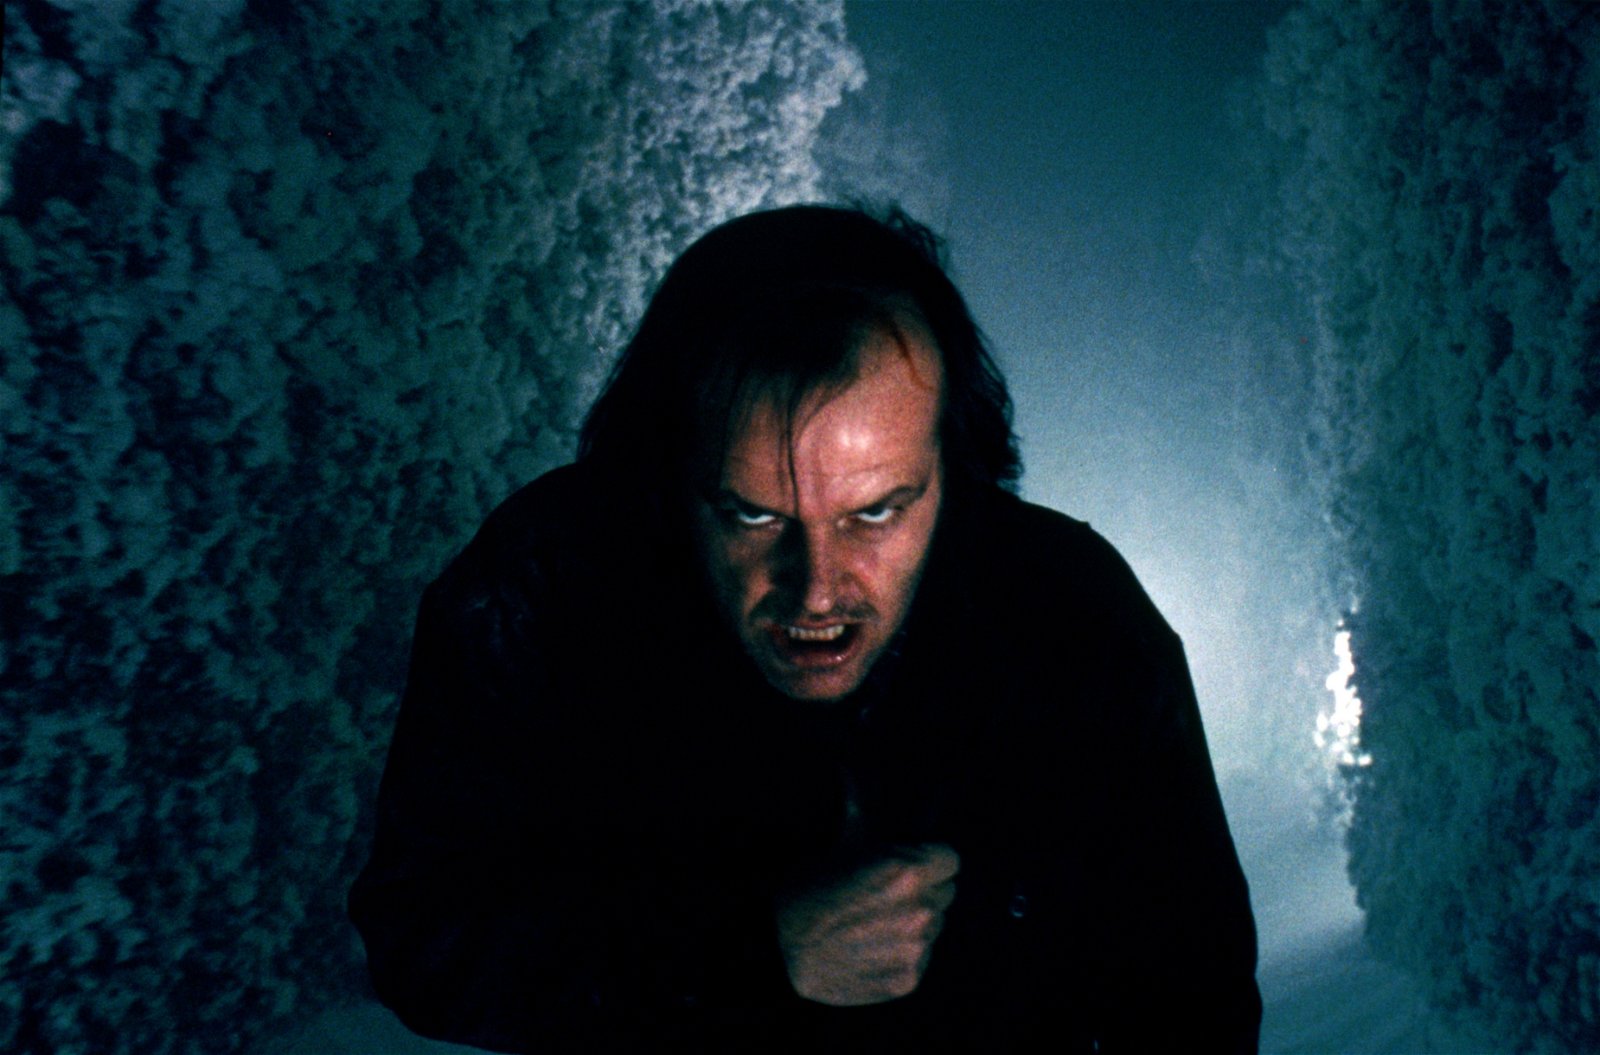 På tv i kväll – kultförklarad Stephen King-skräck med Jack Nicholson